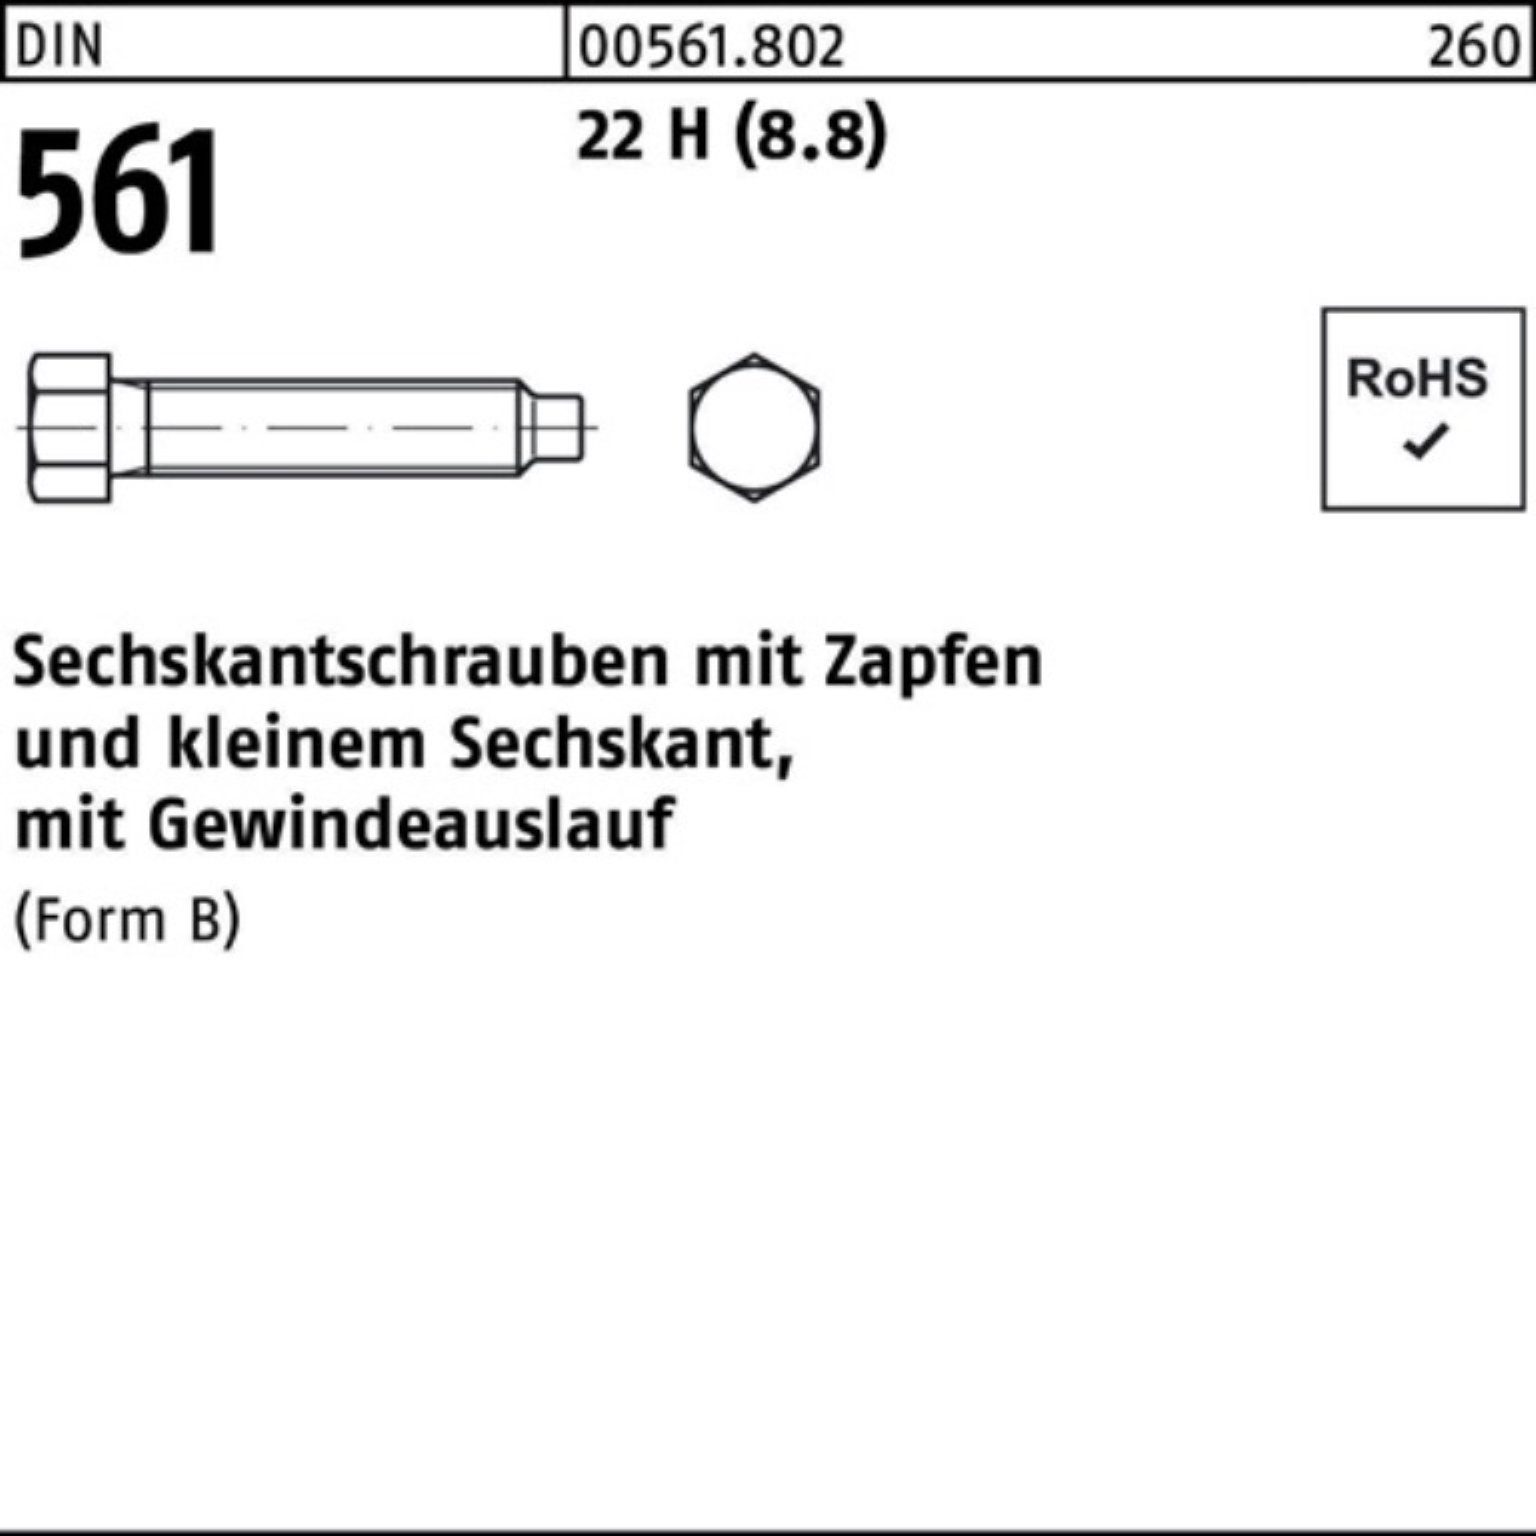 1 20x (8.8) 22 100er Reyher Sechskantschraube BM St 140 Sechskantschraube Zapfen H Pack 561 DIN